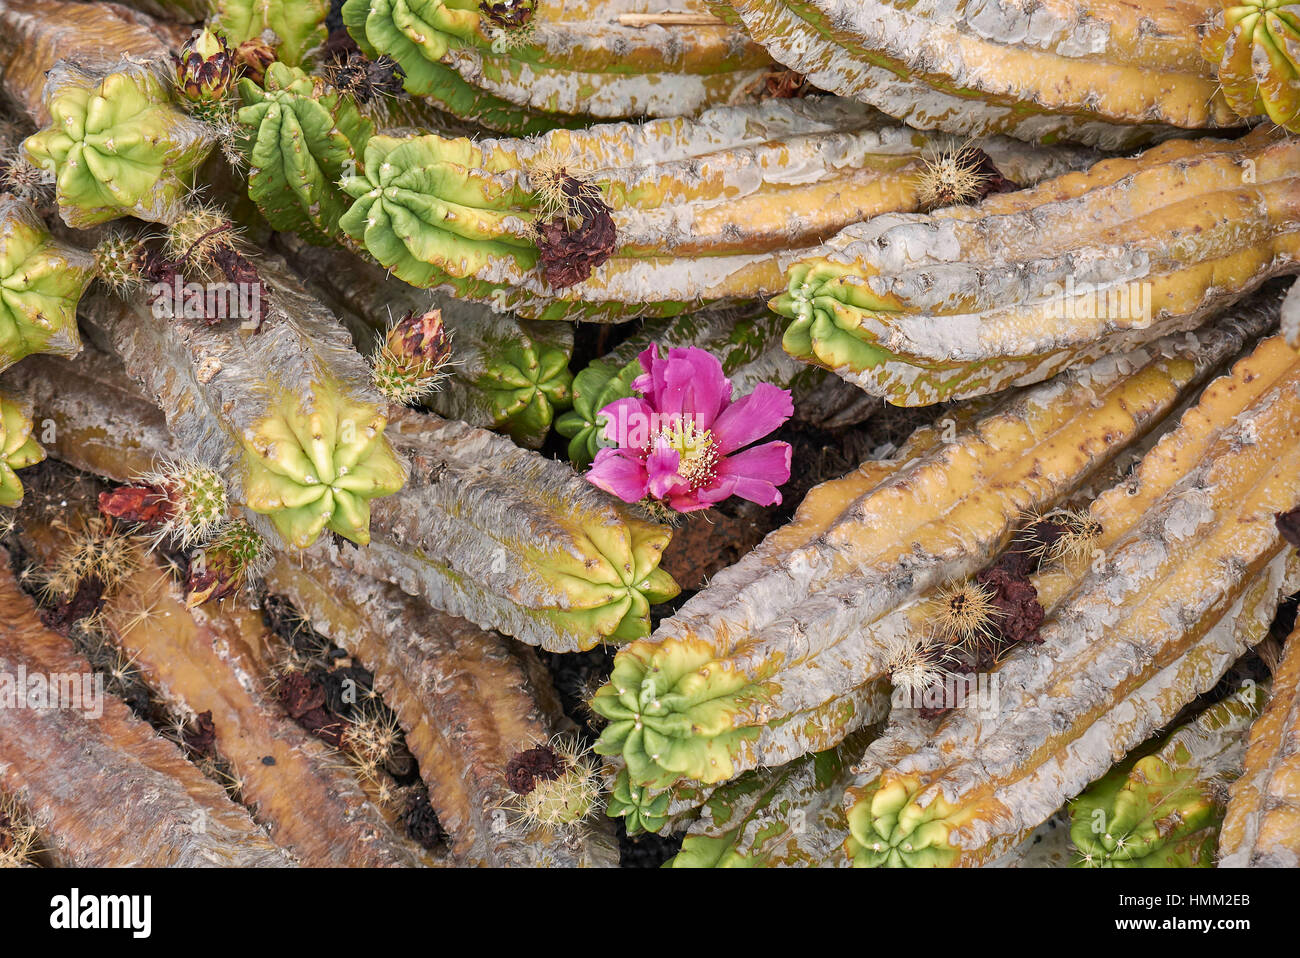 Echinocereus pentalophus Stock Photo